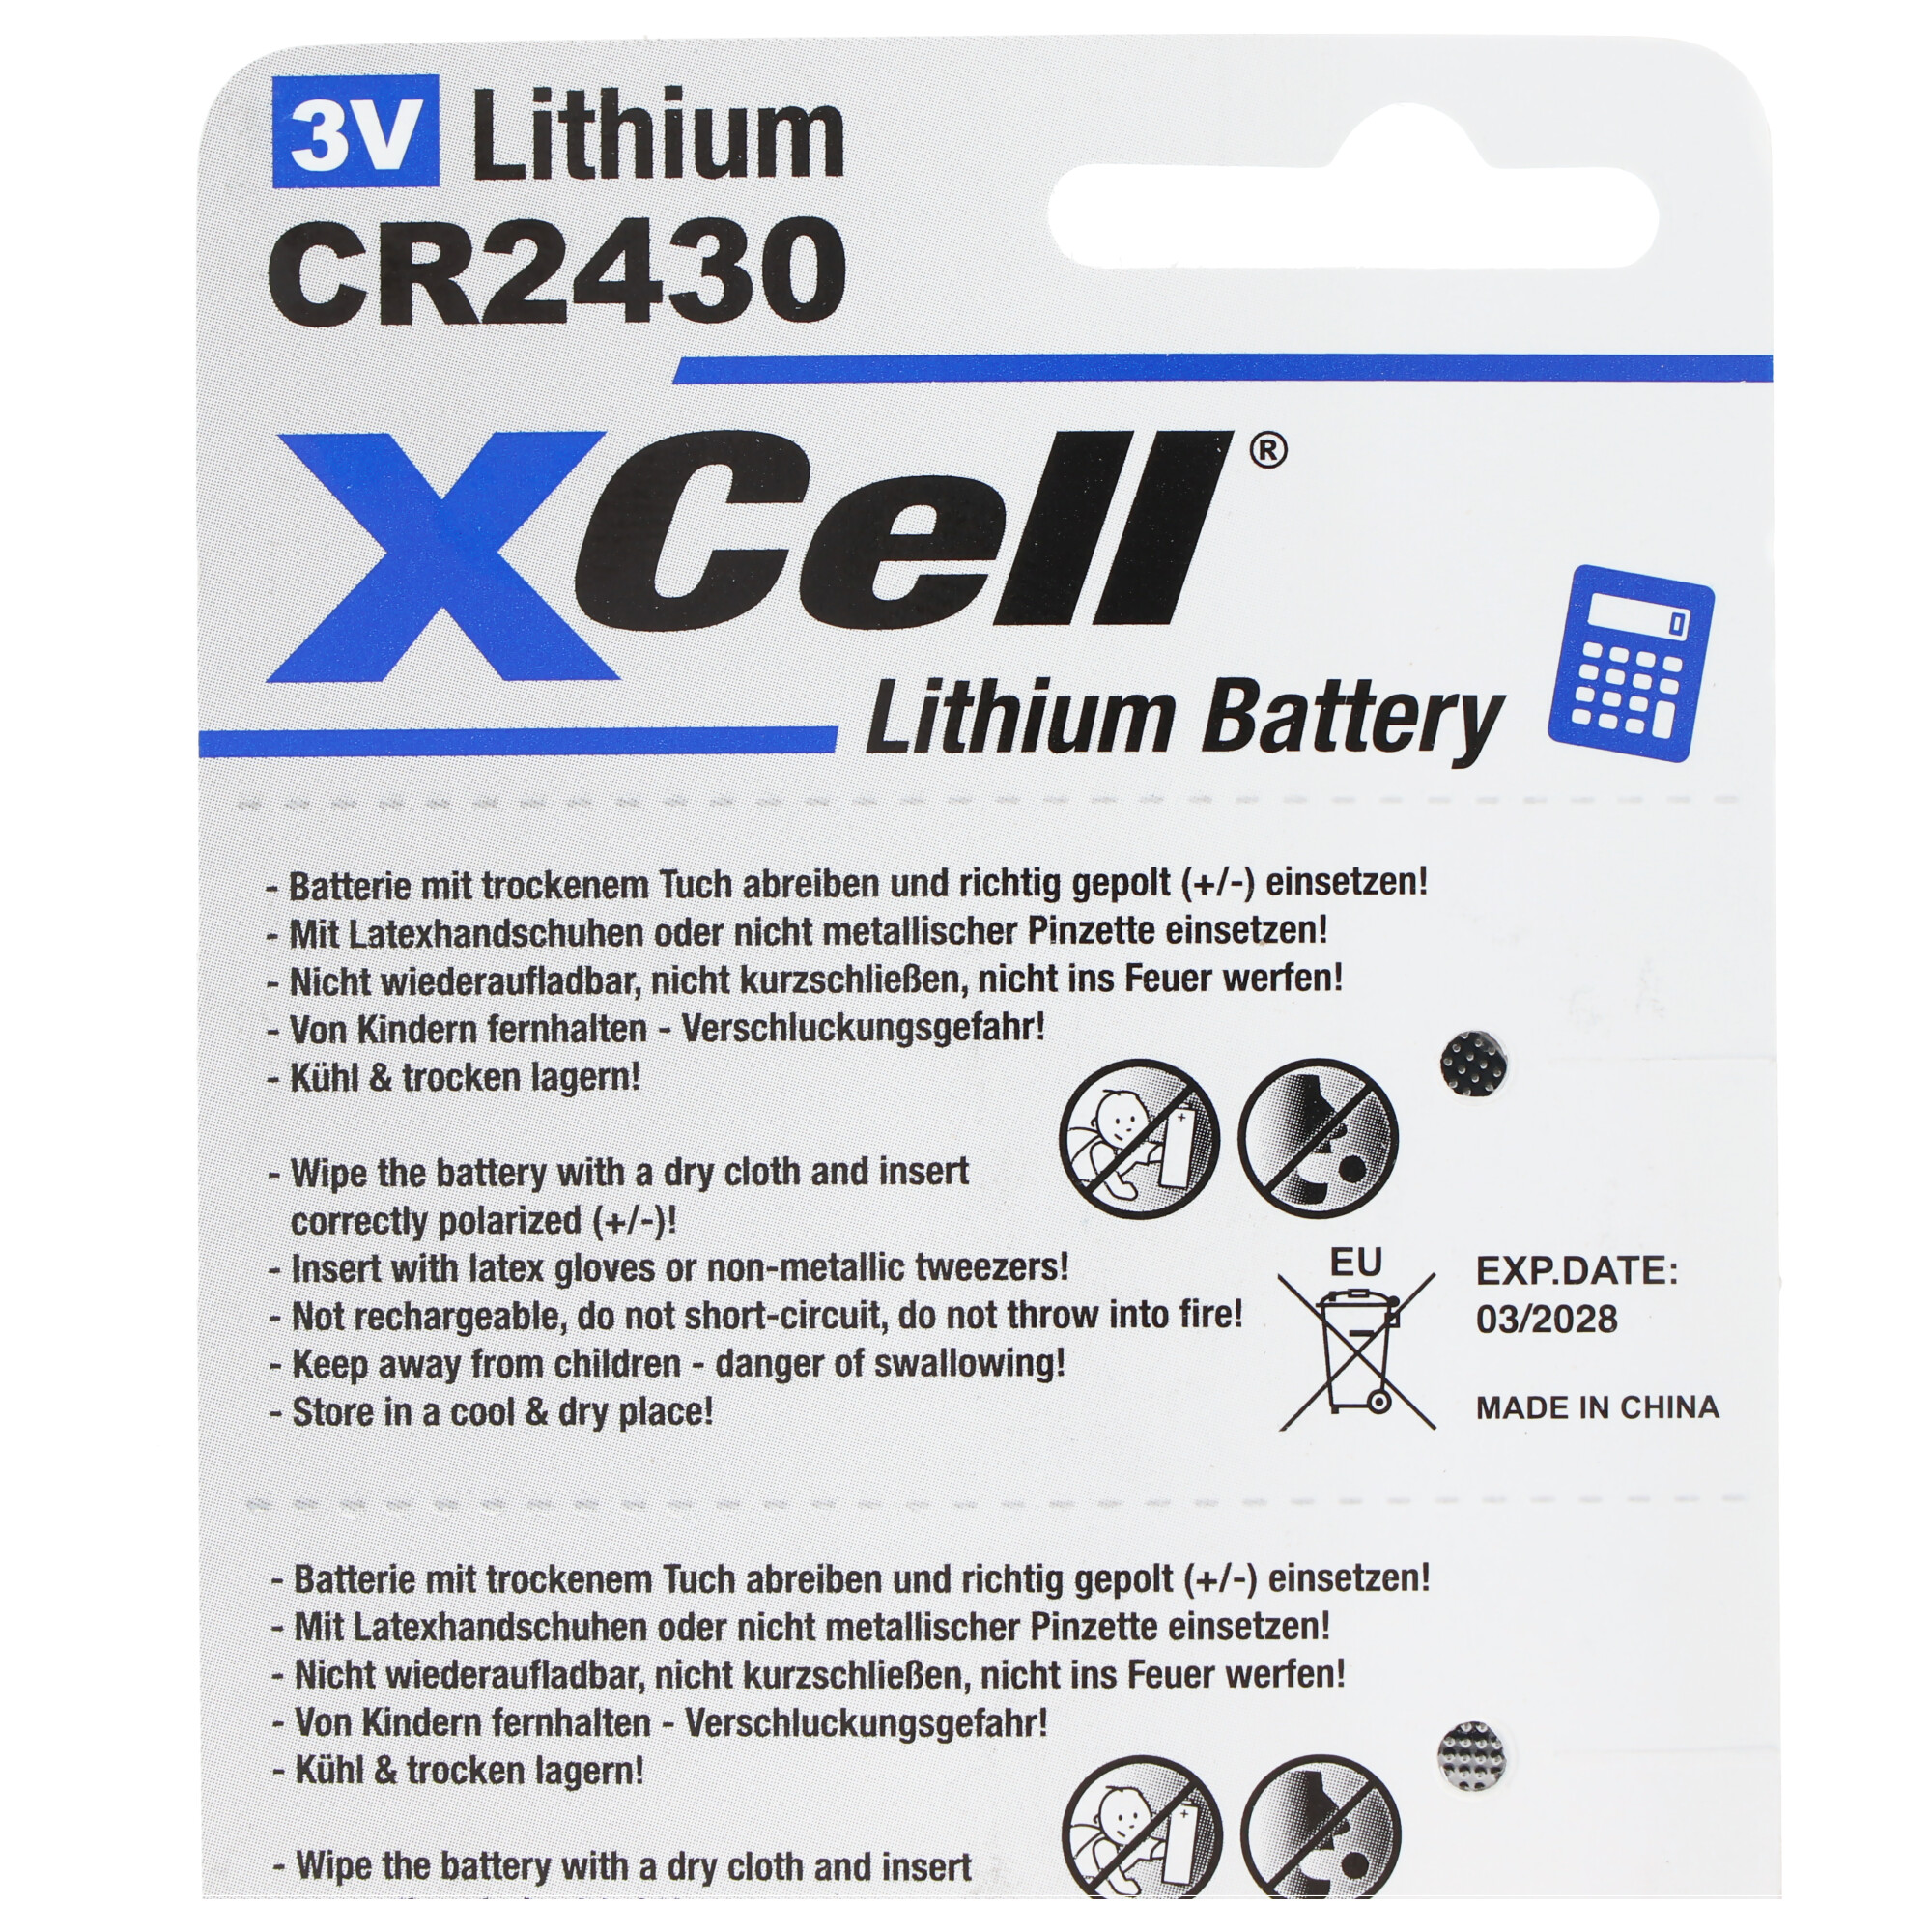 5er-Sparset CR2430 Lithium Batterie 3V, CR2430 Batterien im praktischen 5er Set